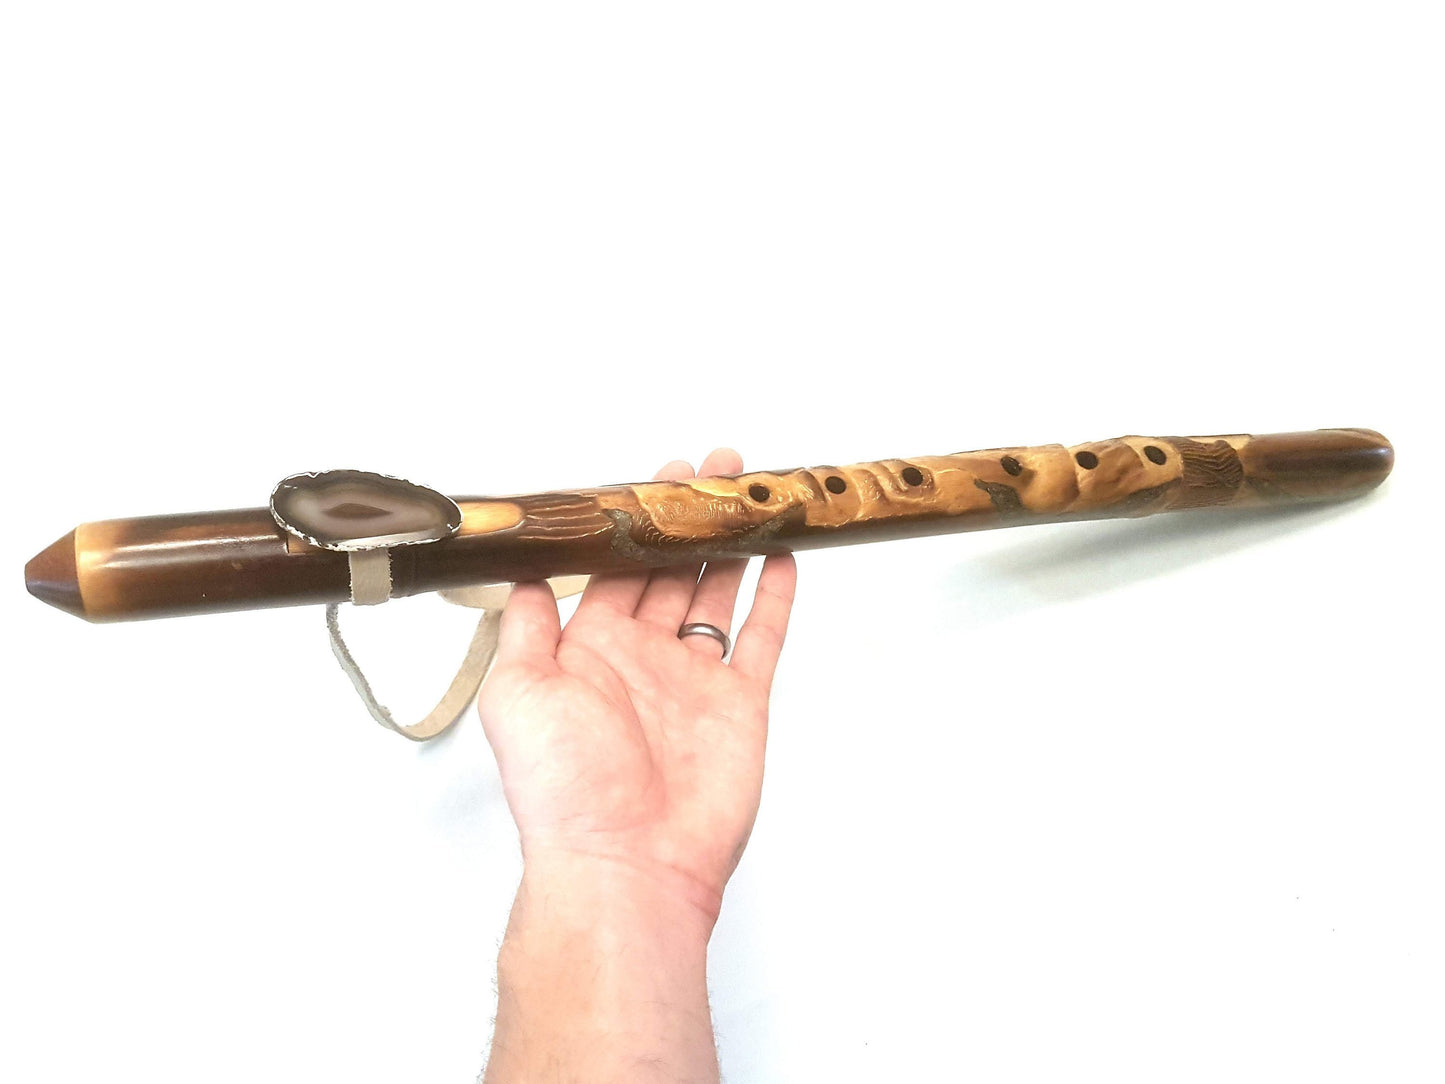 Emerald River Native American Style Flute: Hand Size Comparison